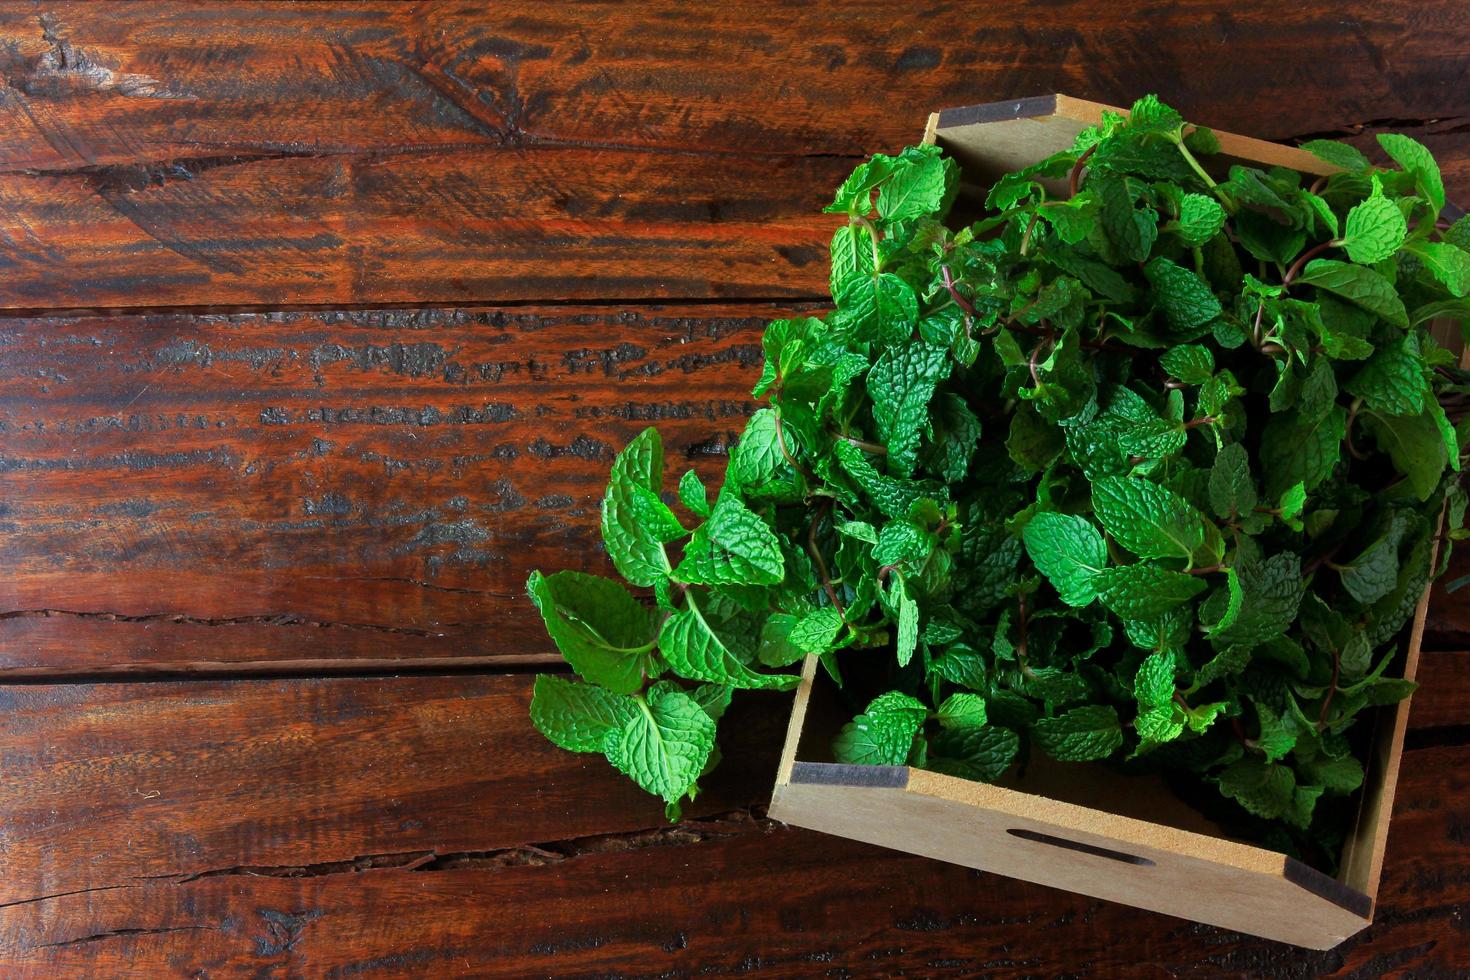 grupo de hortelã fresca orgânica verde na cesta sobre a mesa de madeira rústica. hortelã-pimenta aromática com usos medicinais e culinários foto